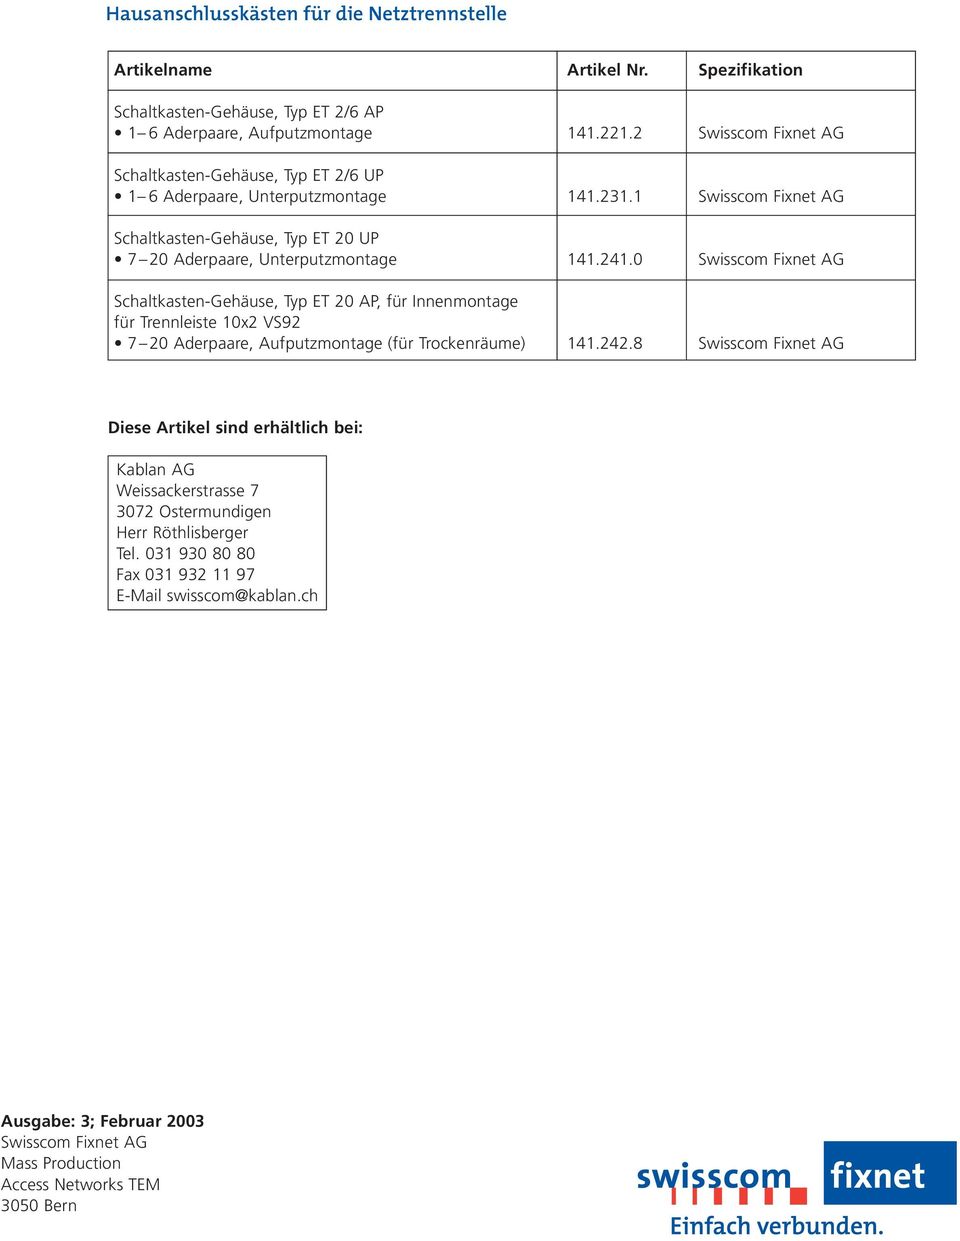 0 Swisscom Fixnet AG Schaltkasten-Gehäuse, Typ ET 20 AP, für Innenmontage für Trennleiste x2 VS92 7 20 Aderpaare, Aufputzmontage (für Trockenräume) 4.242.